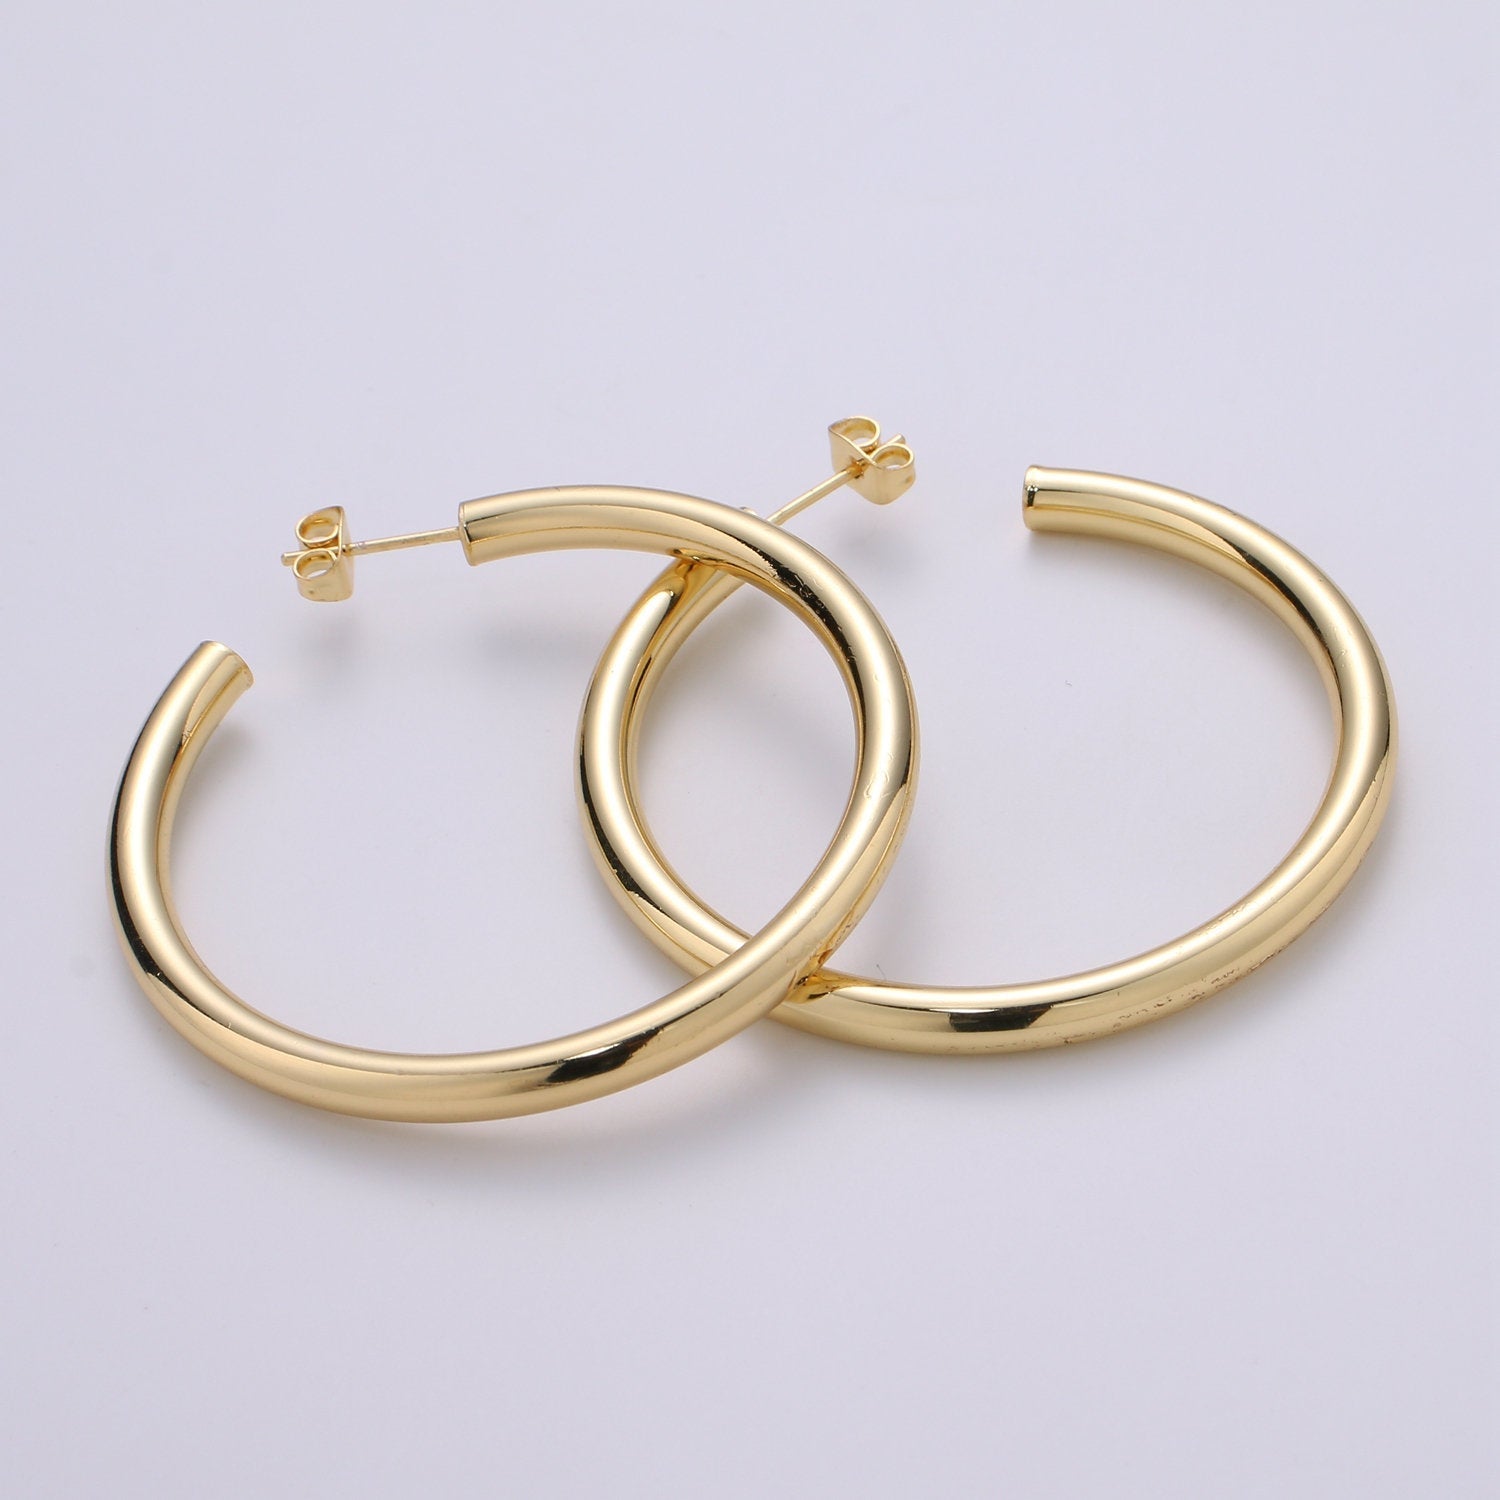 50mm Gold Thick Hoop Earrings, Gold Vermeil Hoop Earrings, Statement Hoops, Tube Hoop Earrings, Large Hoop Earrings, Big Hoop Earrings - DLUXCA